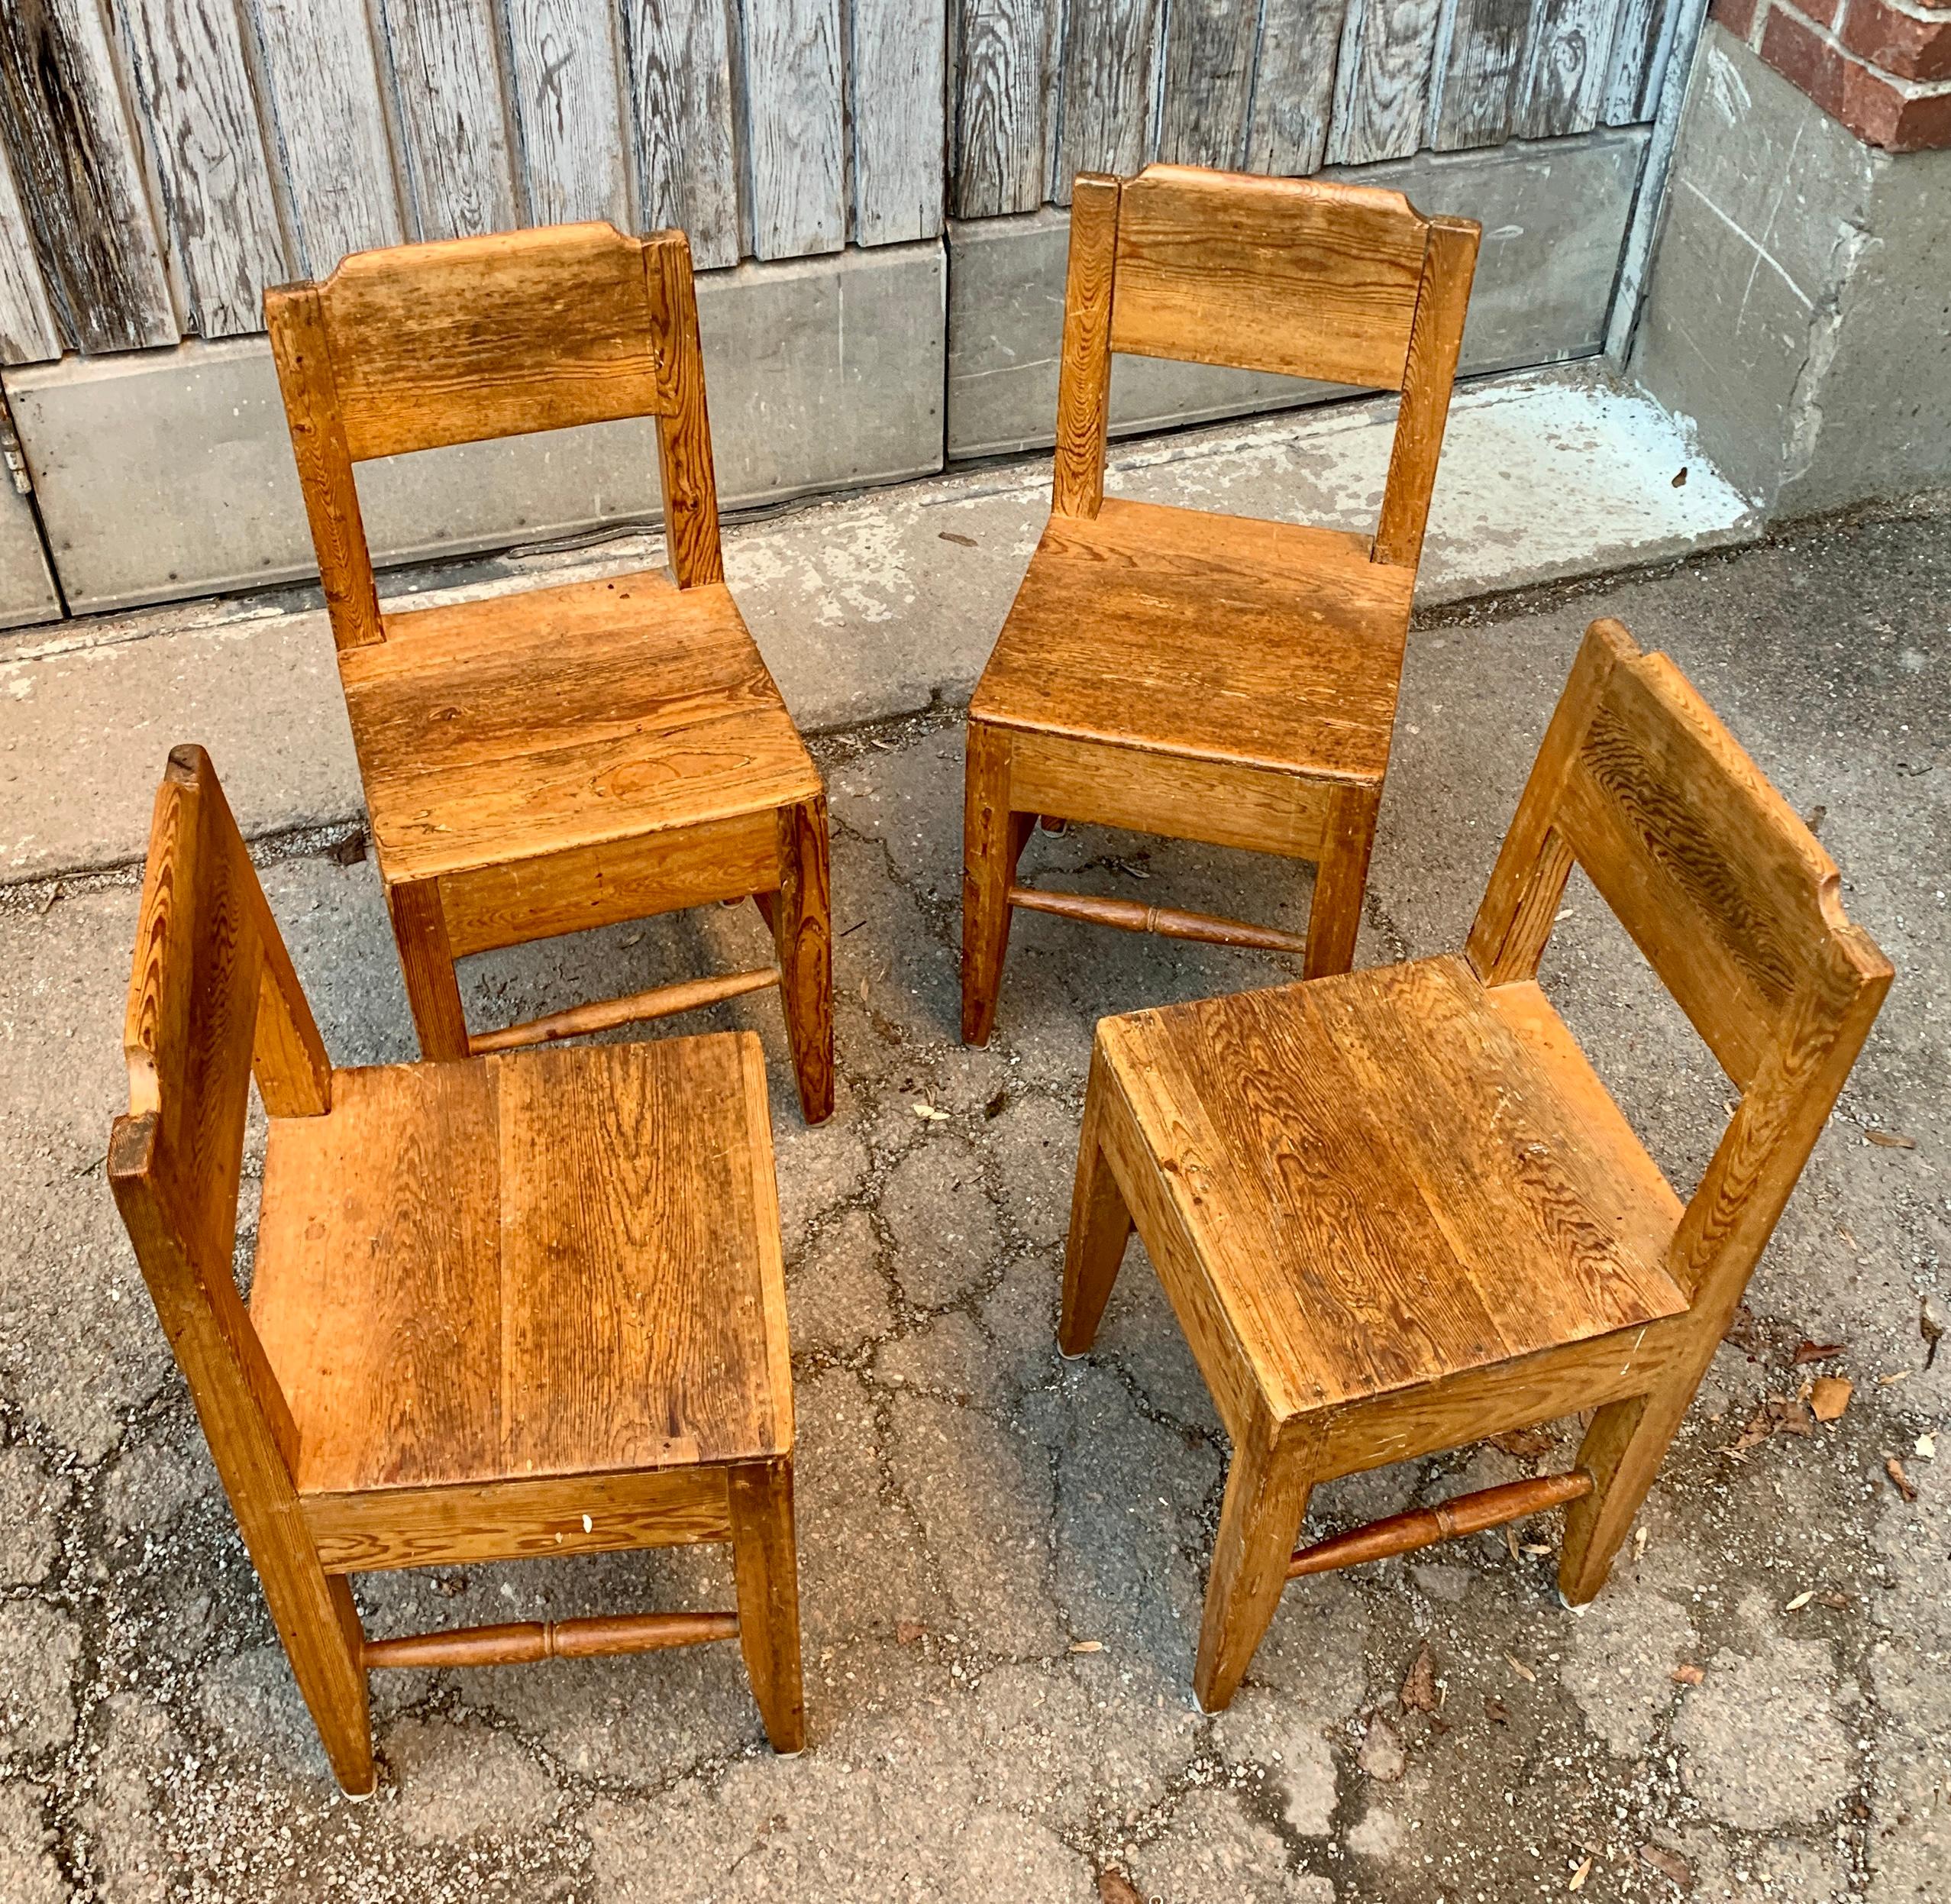 Ensemble de quatre chaises suédoises d'art populaire du XVIIIe siècle

Ensemble de 4 petites chaises en pin patiné. 